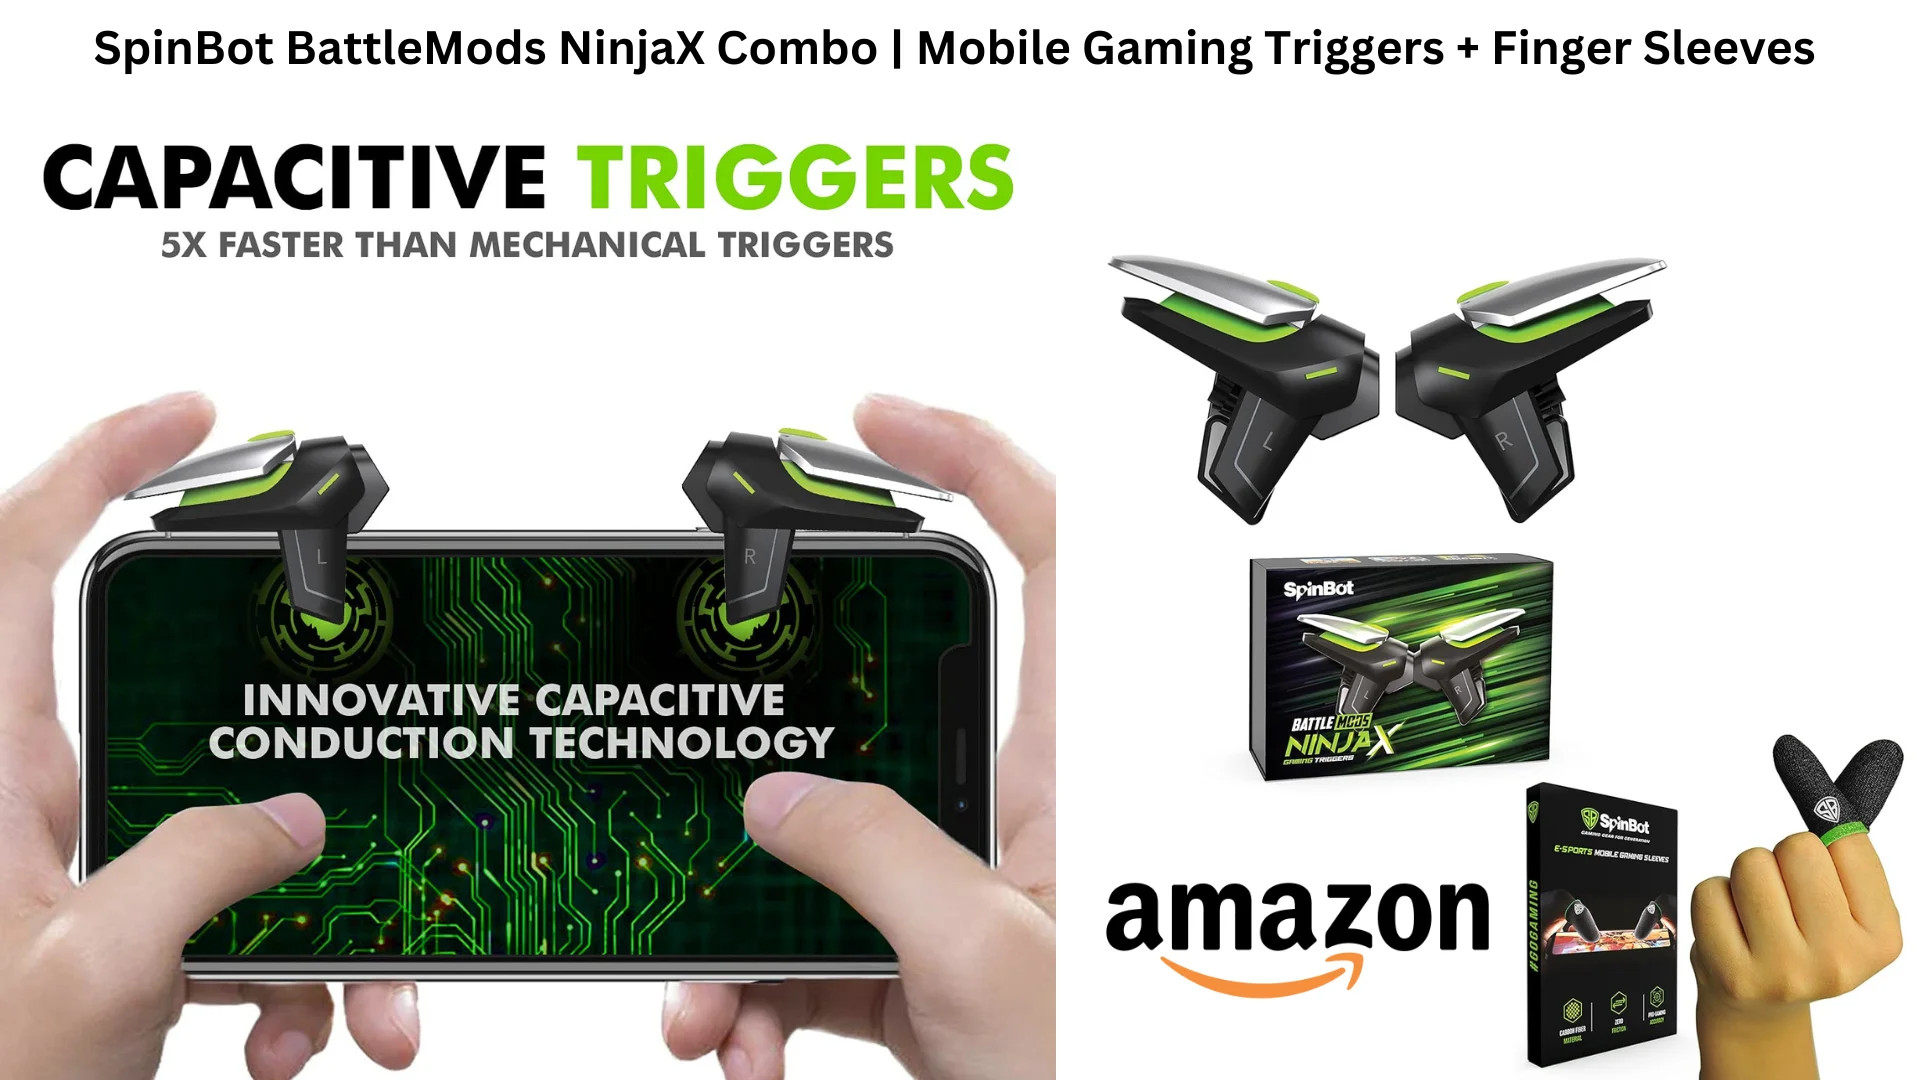 SpinBot BattleMods NinjaX Combo Mobile Gaming Triggers + Finger Sleeves